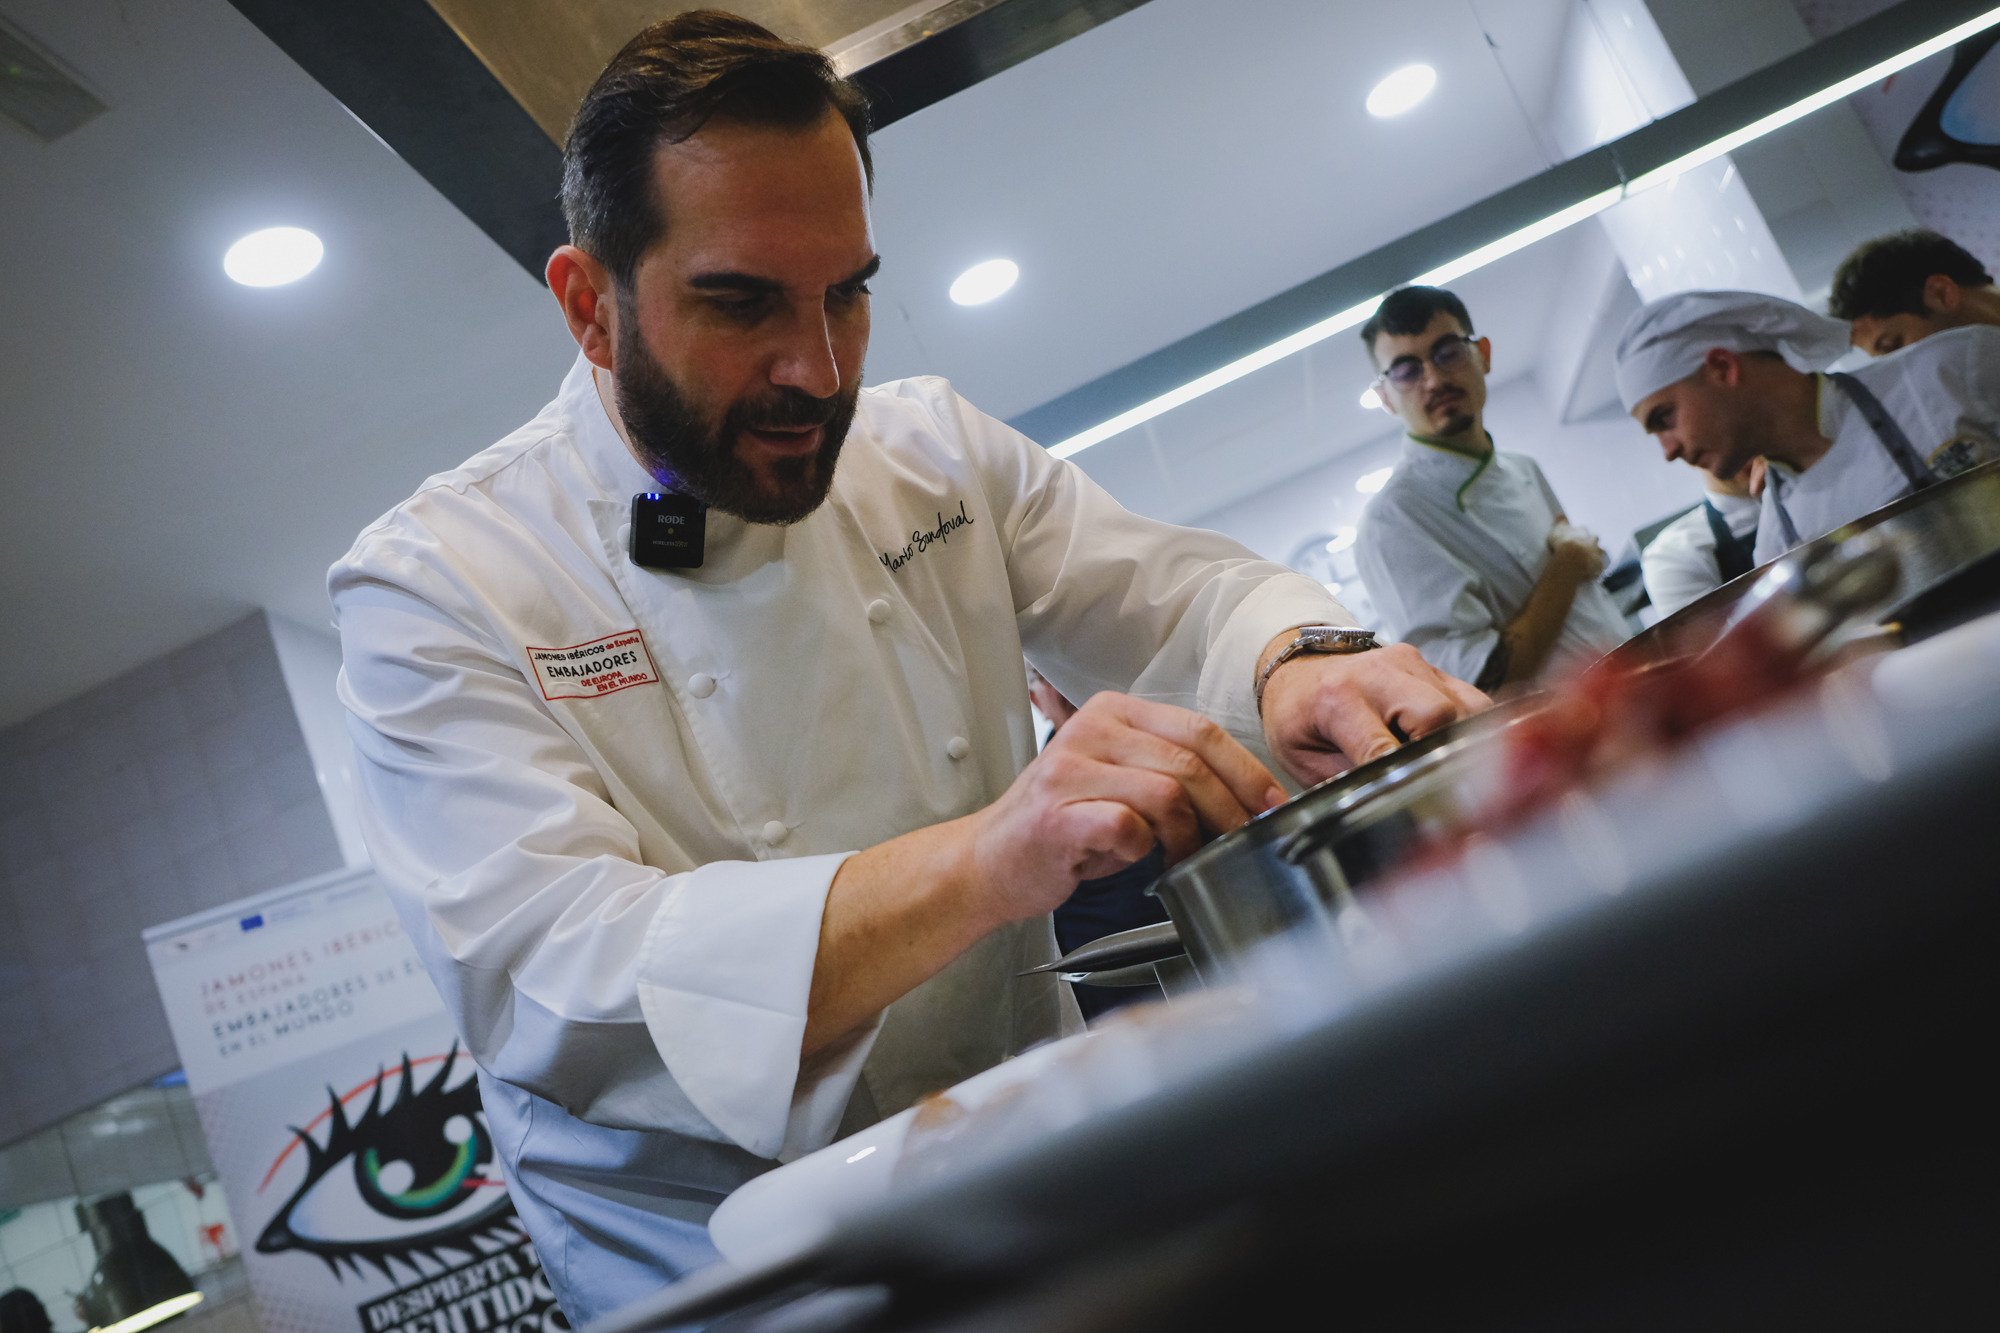 El Jamón Ibérico protagoniza en Sevilla una exclusiva jornada gastronómica de la mano del gran chef Estrella Michelín Mario Sandoval